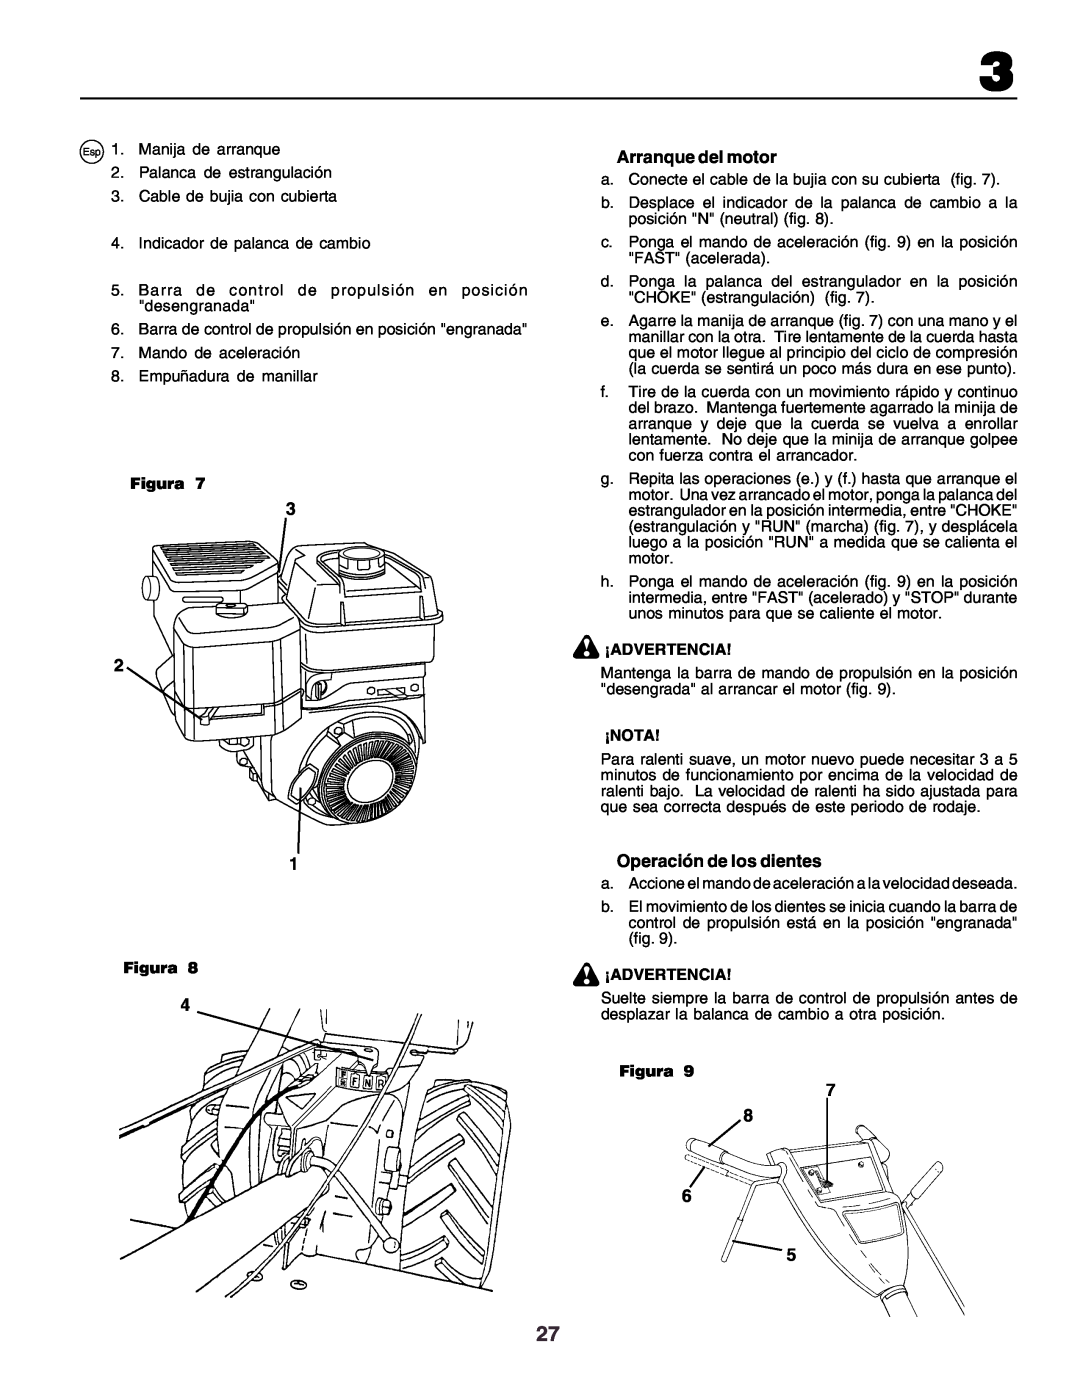 Husqvarna crt51 instruction manual Figura, ¡Advertencia, ¡Nota, Operación de los dientes 